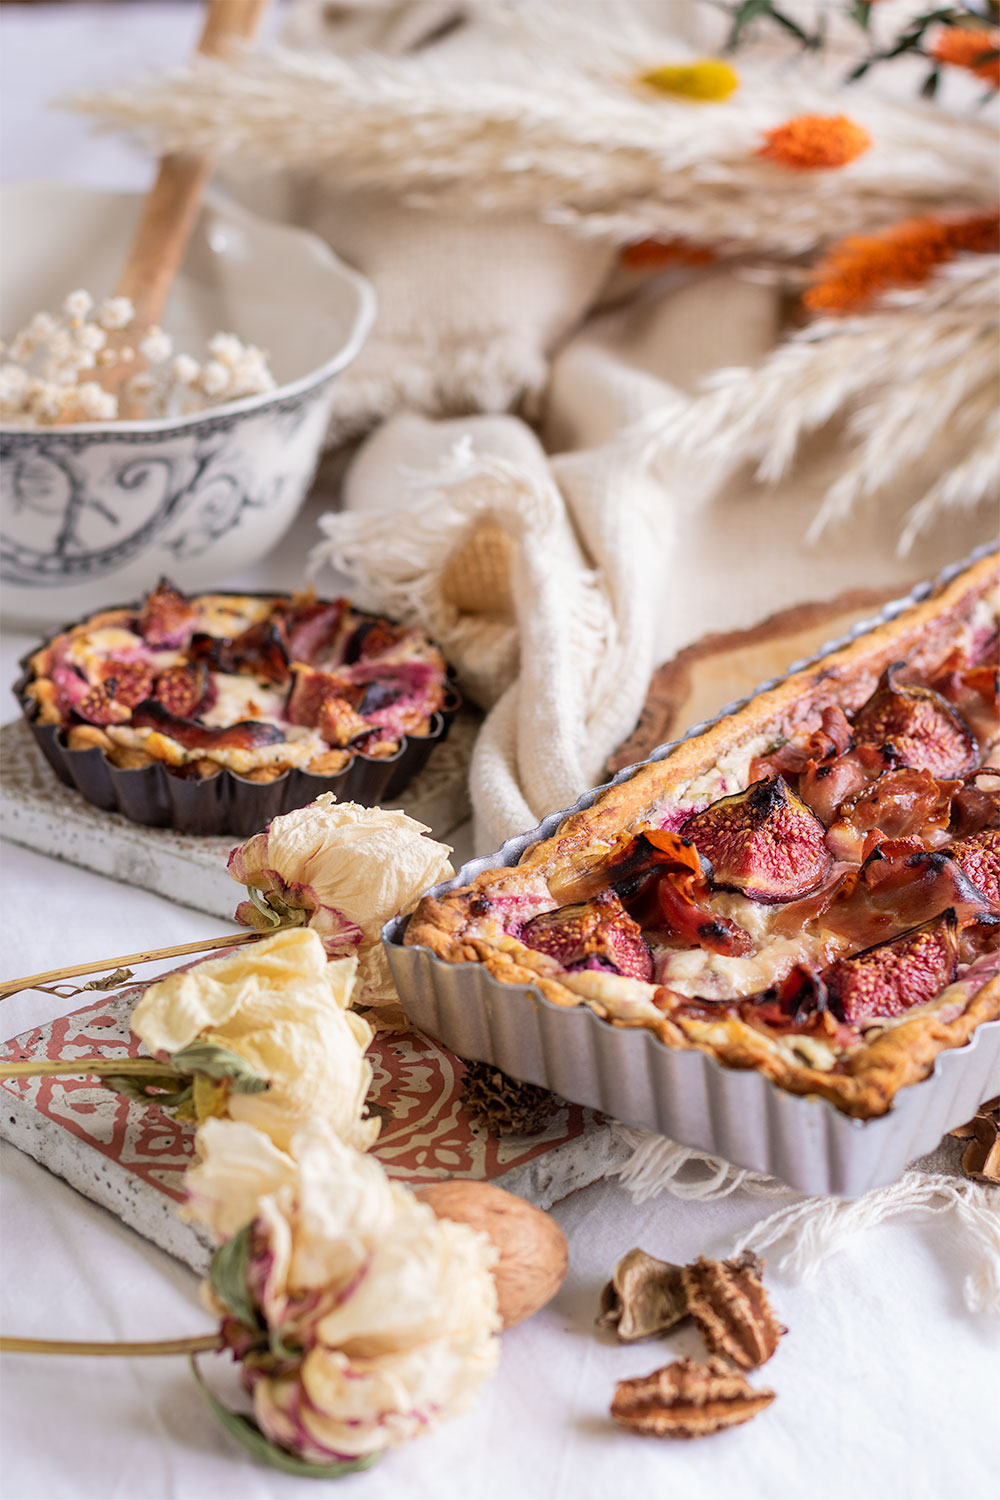 Dans un décor d'automne, zoom sur la recette automnale de tarte aux figues et jambon